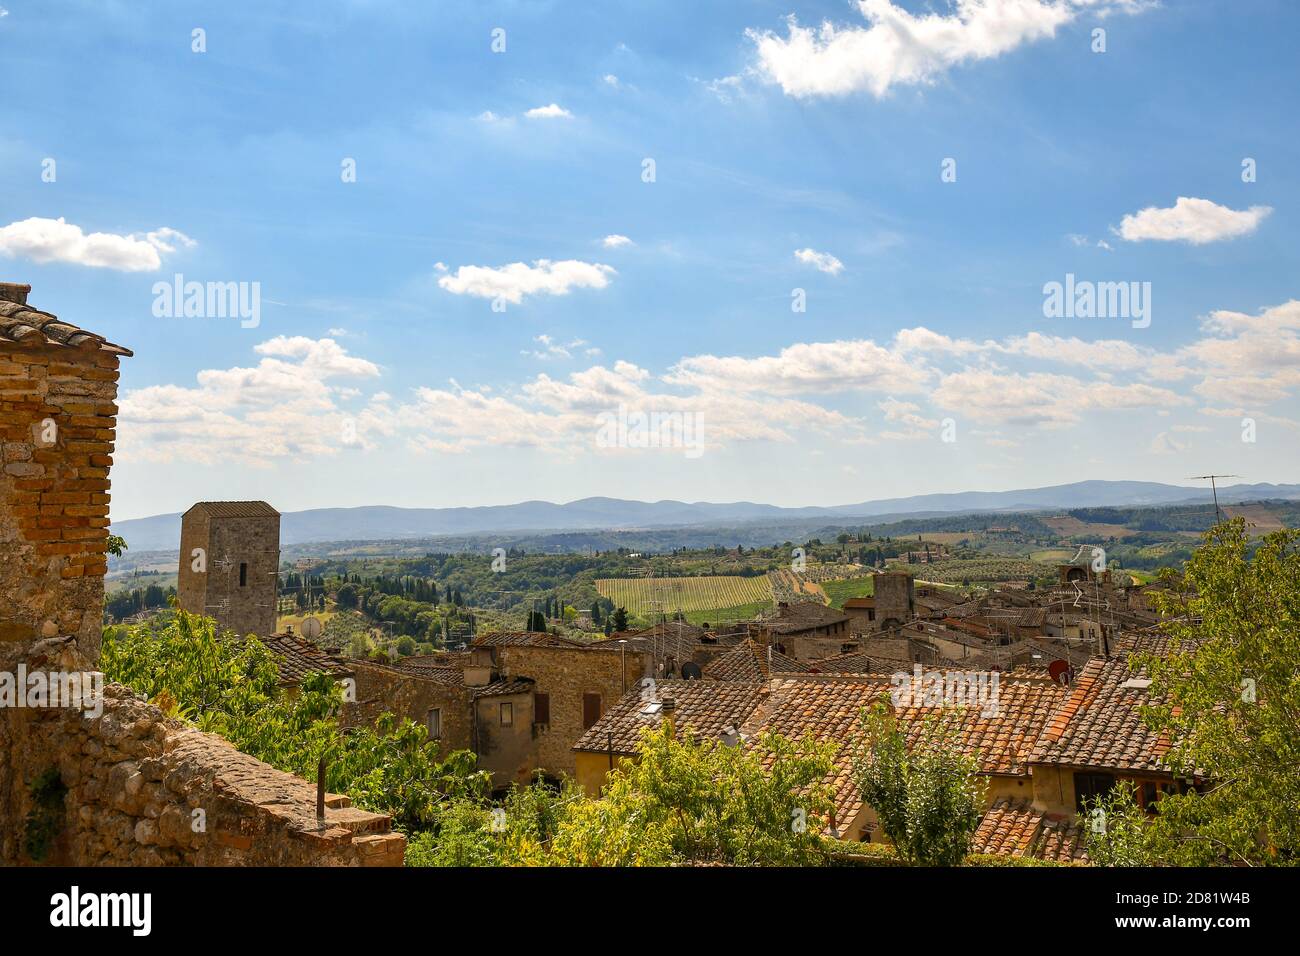 Vista elevata sul centro storico di San Gimignano, patrimonio dell'umanità dell'UNESCO, con la medievale Torre Campatelli e le colline toscane, Toscana, Italia Foto Stock